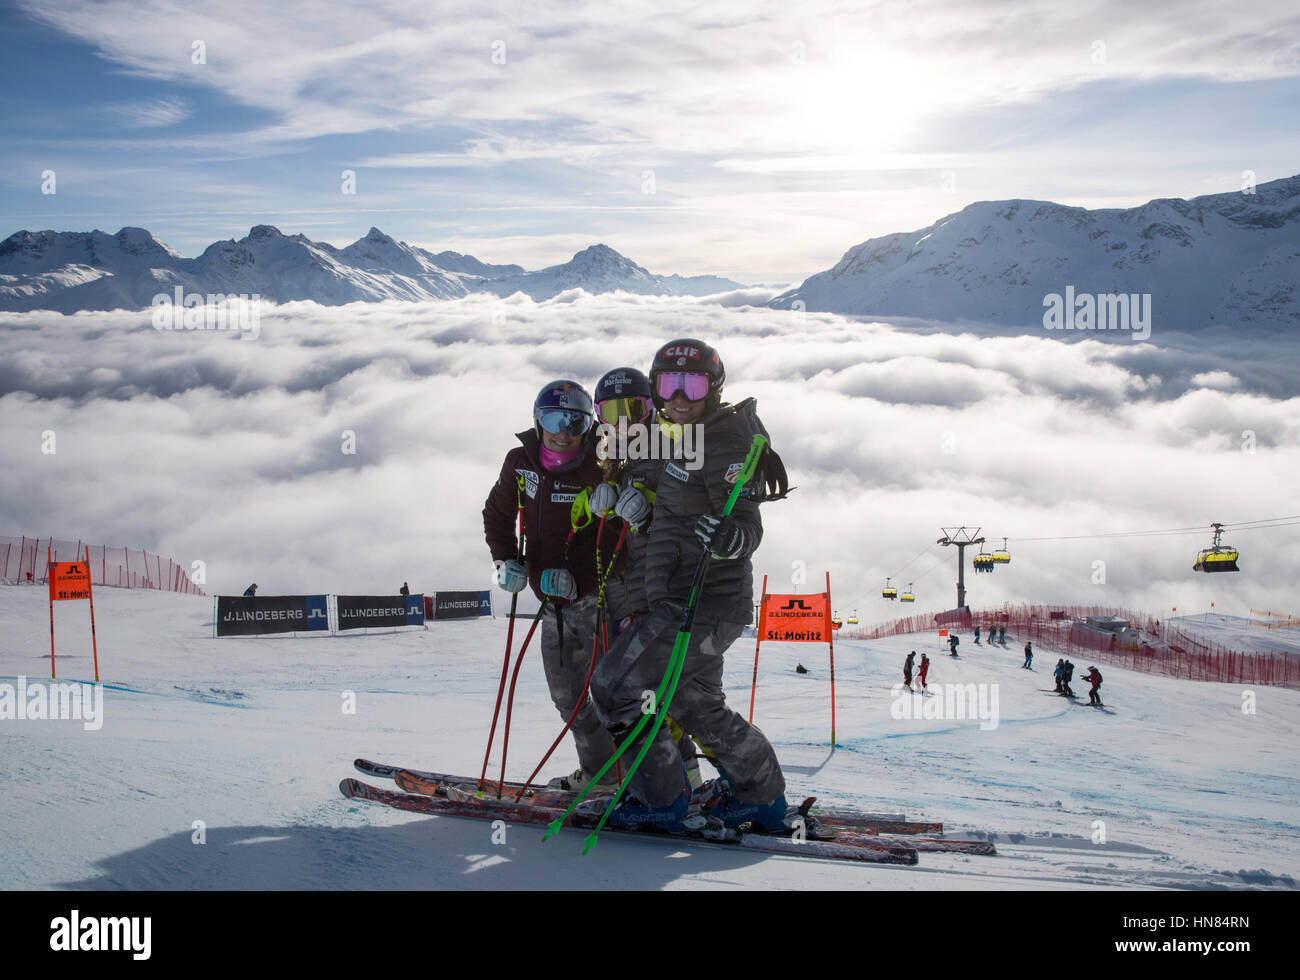 St. Moritz, Schweiz. 9. Februar 2017. Das amerikanische Team mit US-Skifahrer Lindsey Vonn (l) im alpinen Ski-Weltcup in St. Moritz, Schweiz, 9. Februar 2017. Foto: Michael Kappeler/Dpa/Alamy Live News Stockfoto